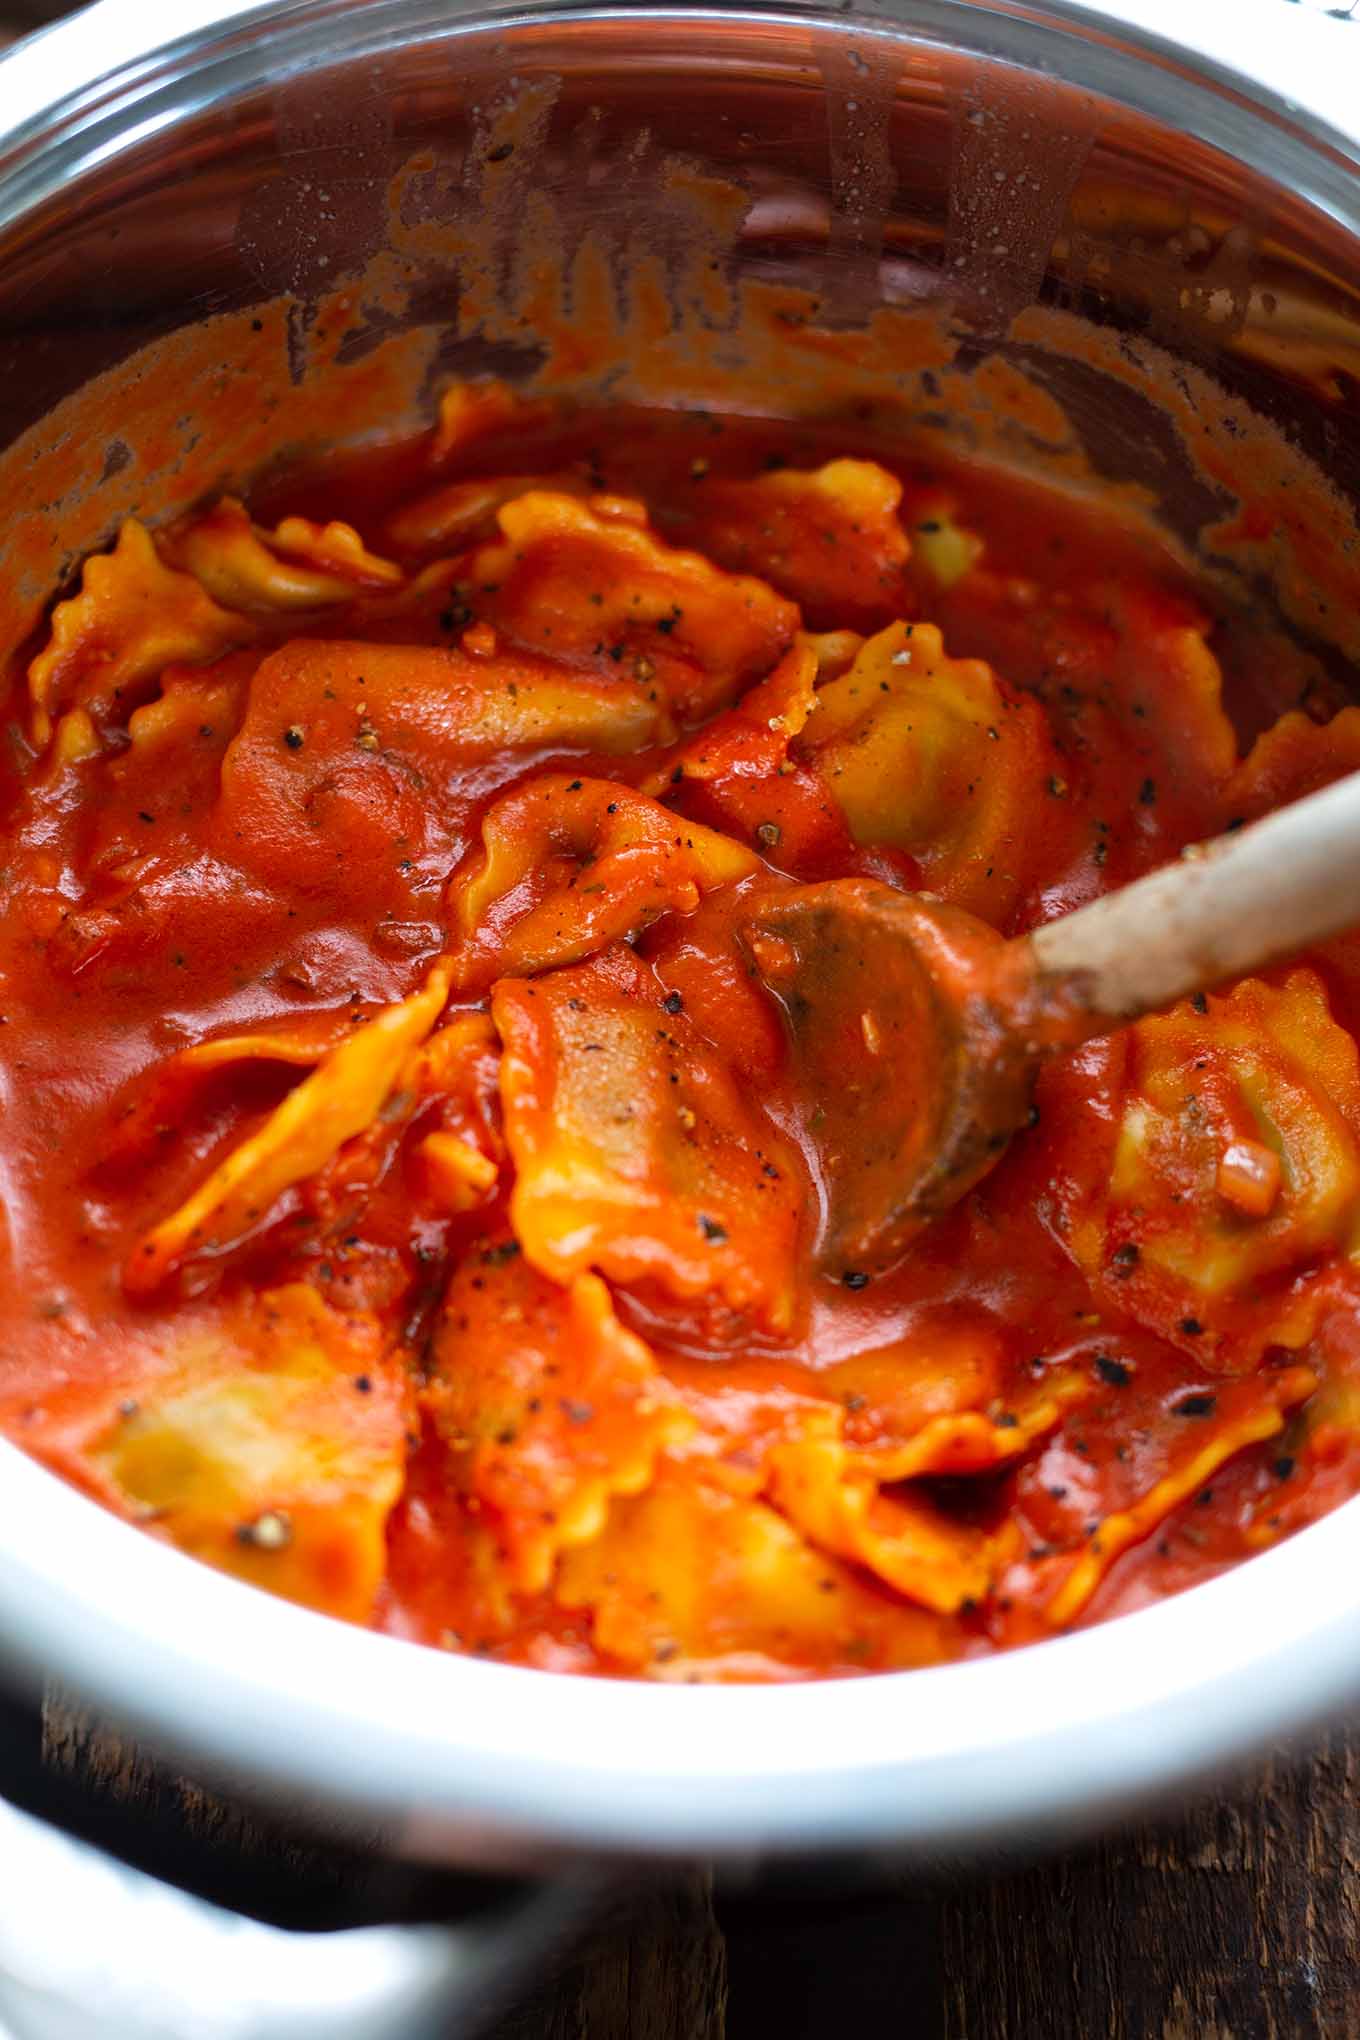 Einfache Ravioli mit Tomatensauce. Bock auf einfache Ravioli mit Tomatensauce ganz ohne Dose? Dann ist dieses schnelle & leckere Rezept genau das Richtige! Hier geht's zum Klassiker! Kochkarussell - dein Foodblog für schnelle und einfache Feierabendküche.